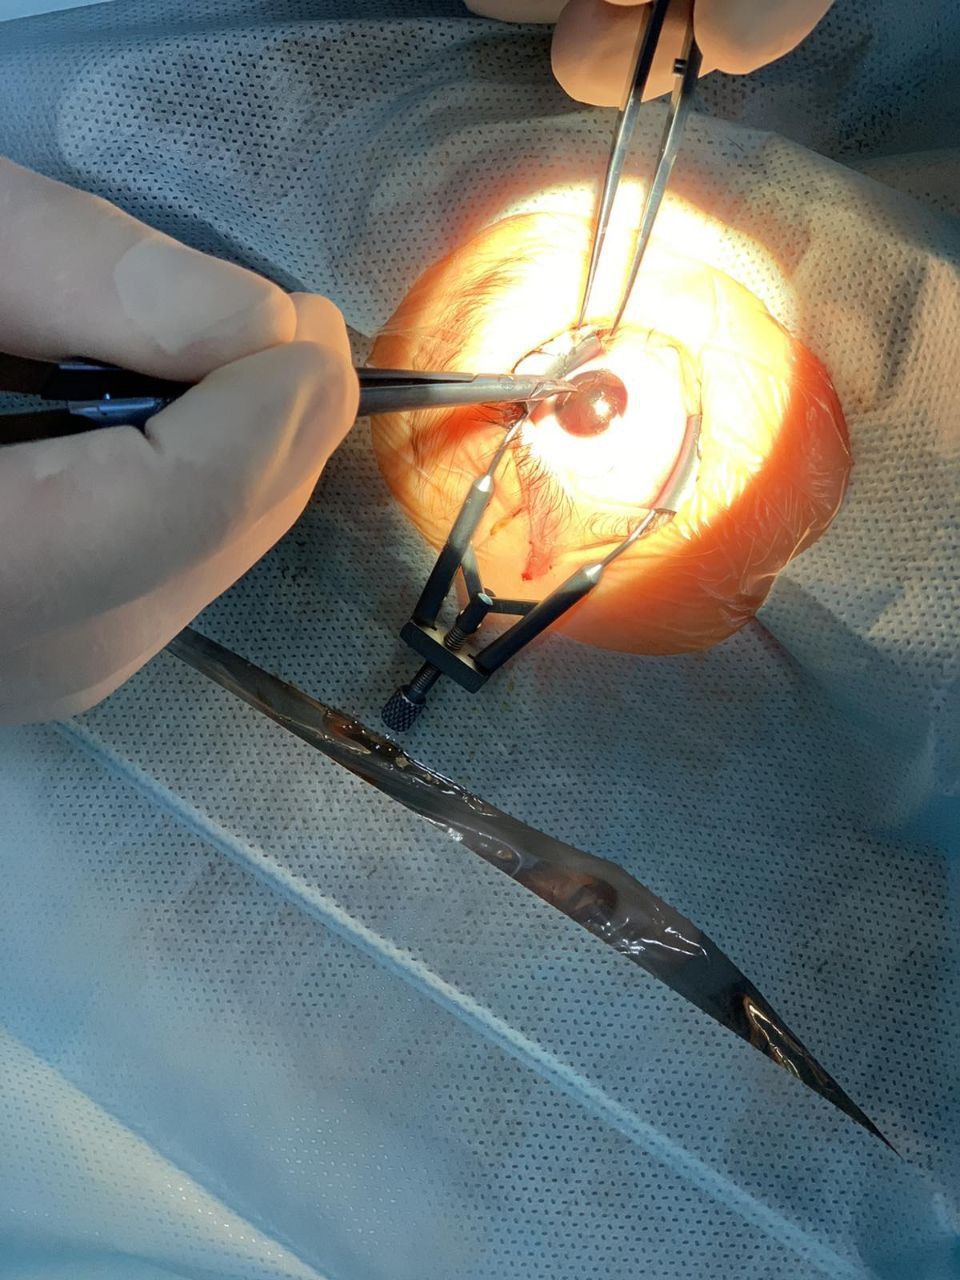 Врач-офтальмолог провел одномоментную микрохирургическую обработку проникающего ранения с вправлением радужки и наложением микрошвов.